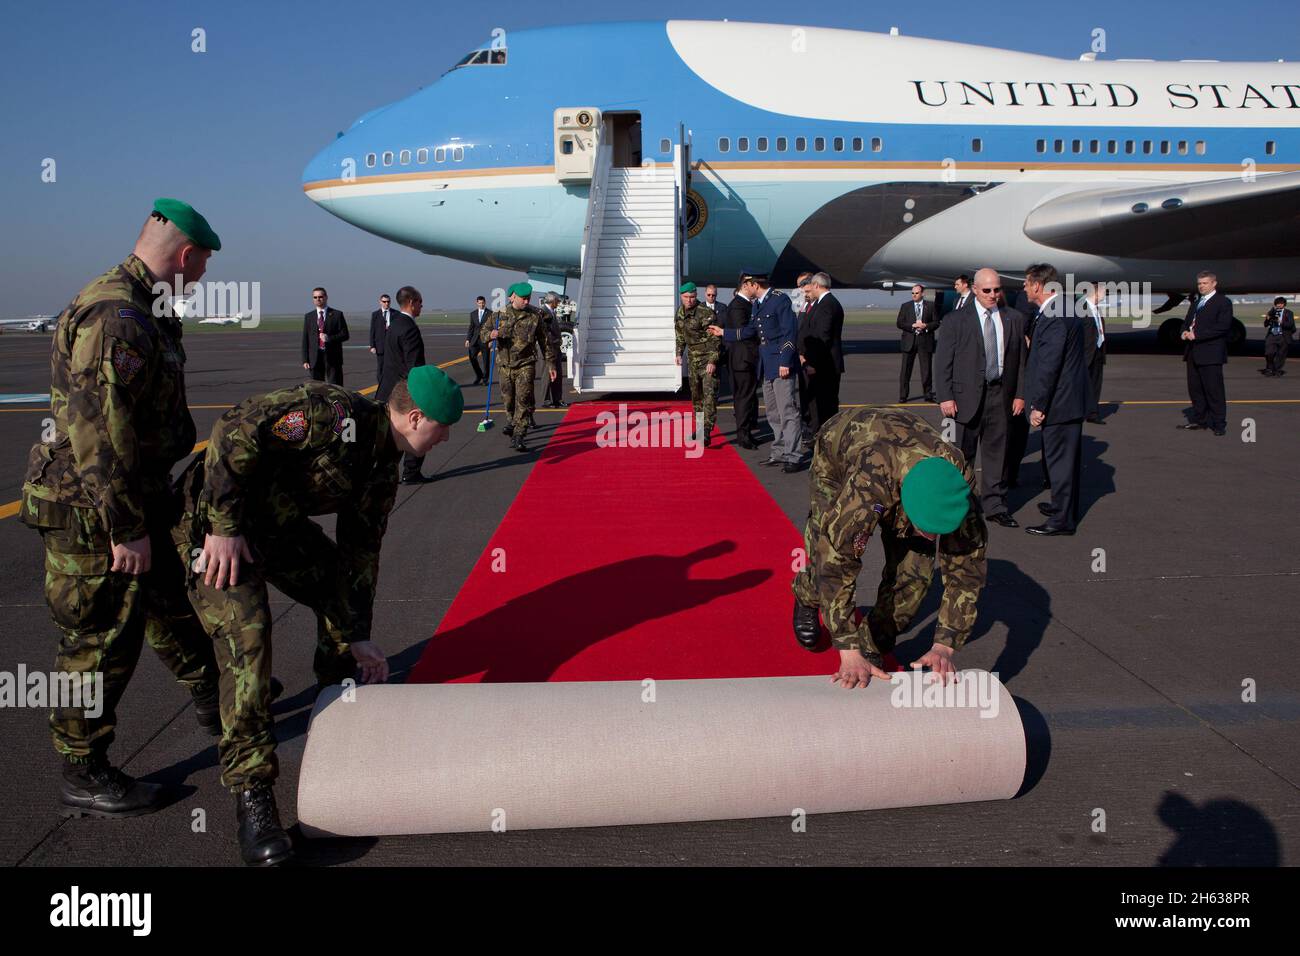 Am Fuß der Treppe der Air Force One wird ein roter Teppich ausgerollt, als Präsident Barack Obama am Ruzyne Airport in Prag, Tschechische Republik, am 8. April 2010 ankommt. Stockfoto